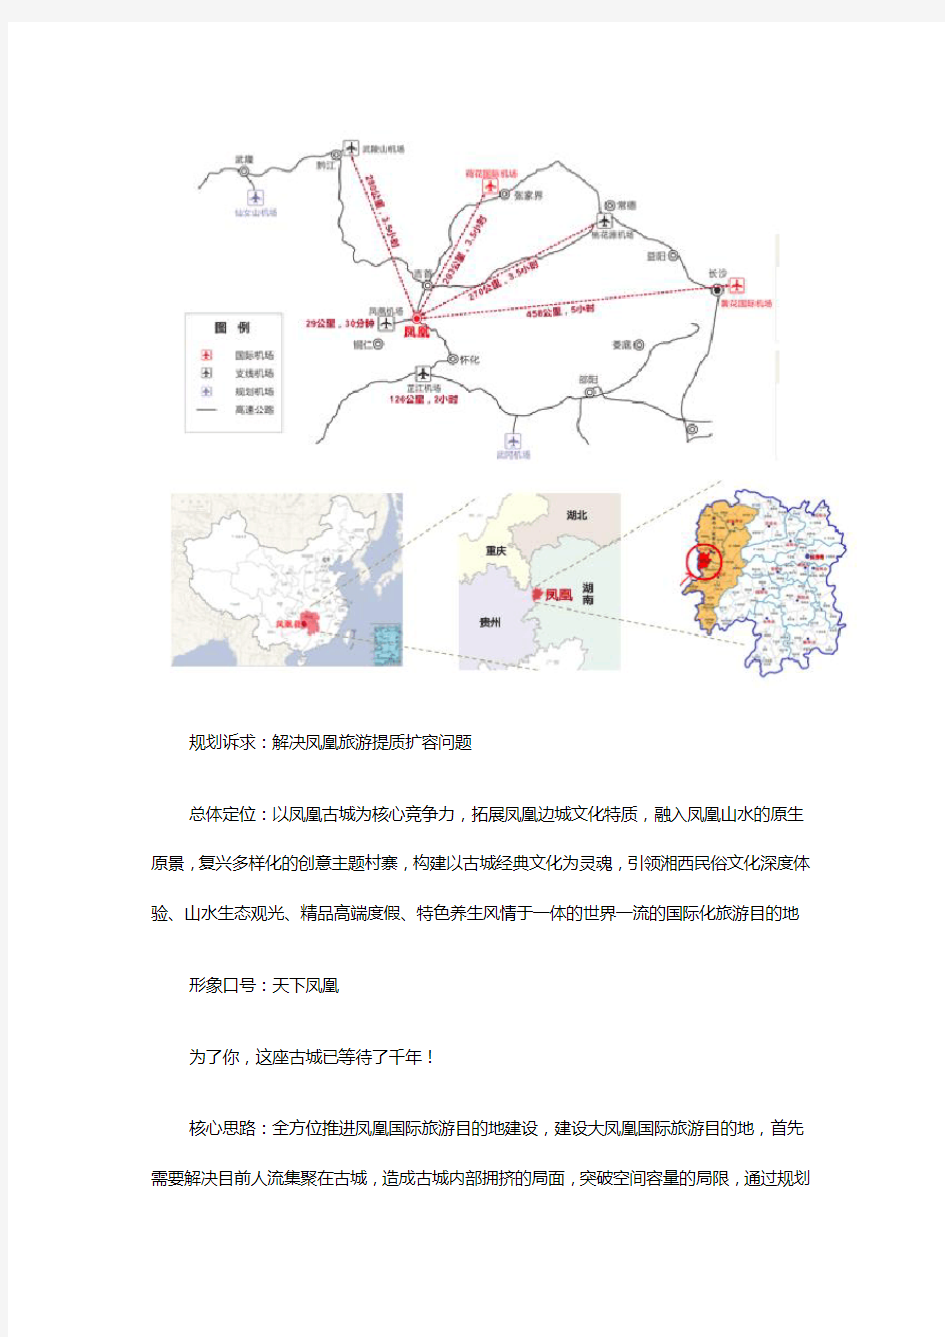 湖南省凤凰县旅游发展总体规划修编-县级旅游发展规划